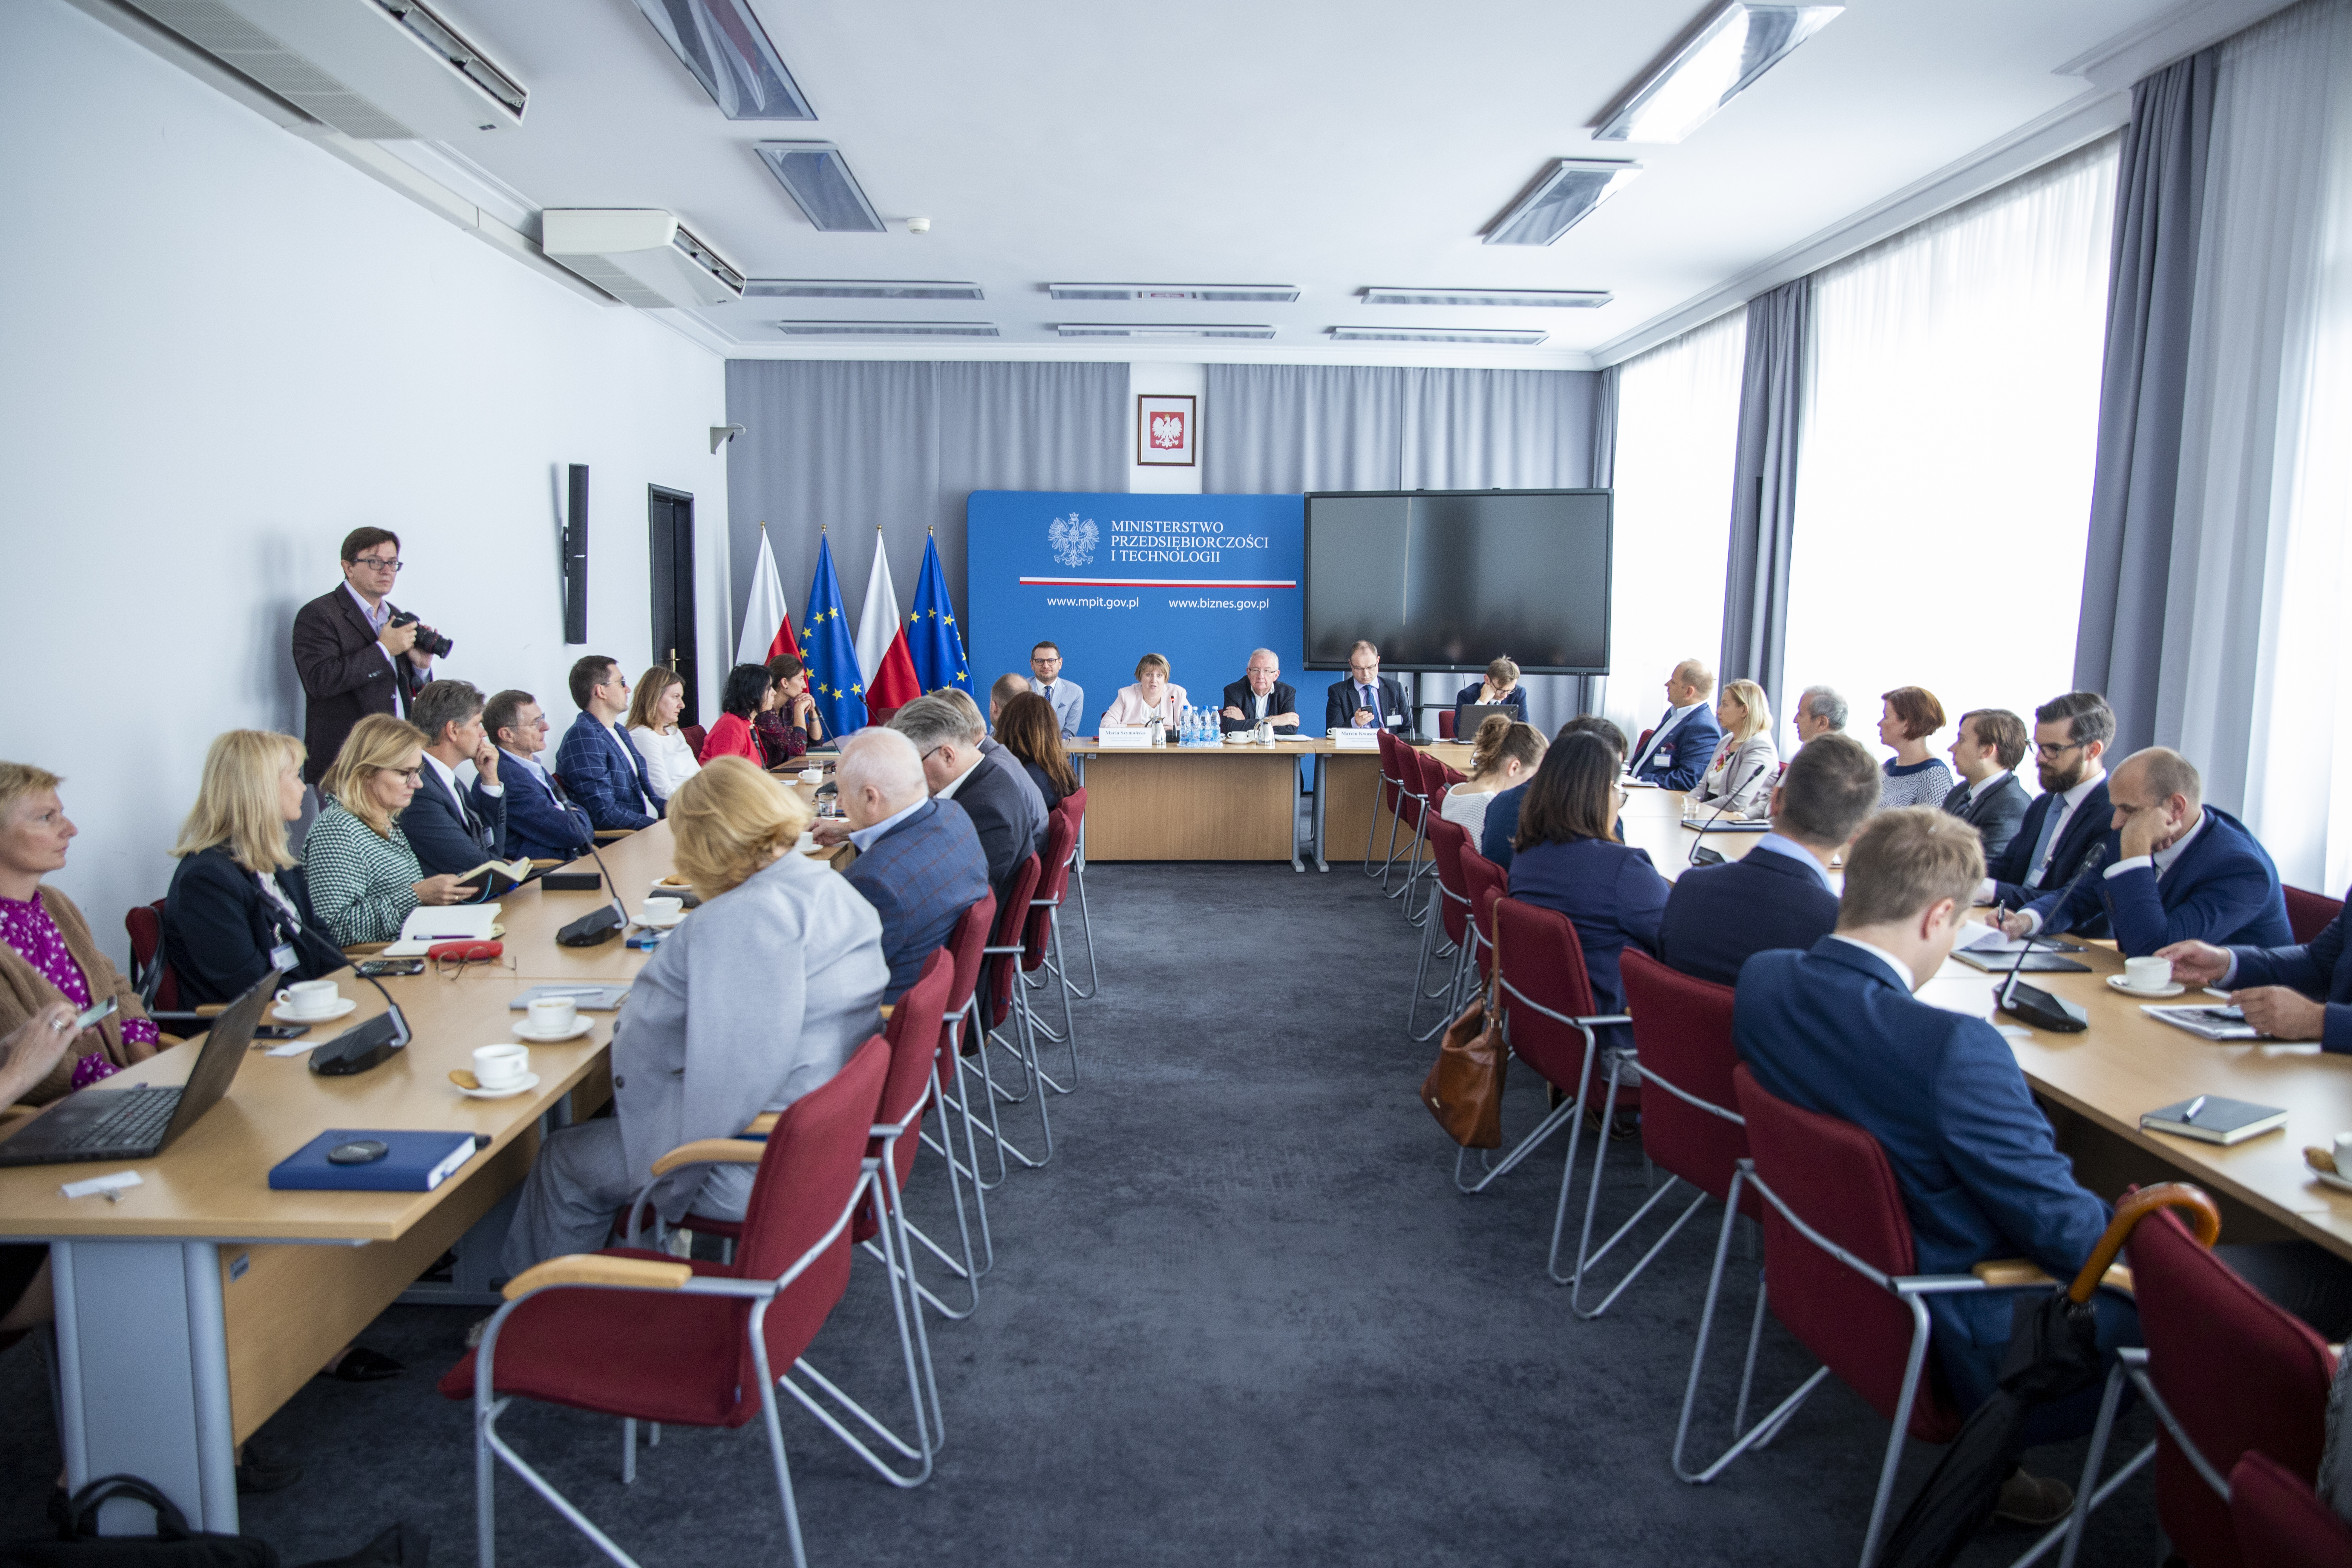 Zdjęcie przedstawia uczestników spotkania siedzących przy dwóch stołach oraz prelegentów na tle niebieskiej tablicy Ministerstwa Przedsiębiorczości i Technologii.